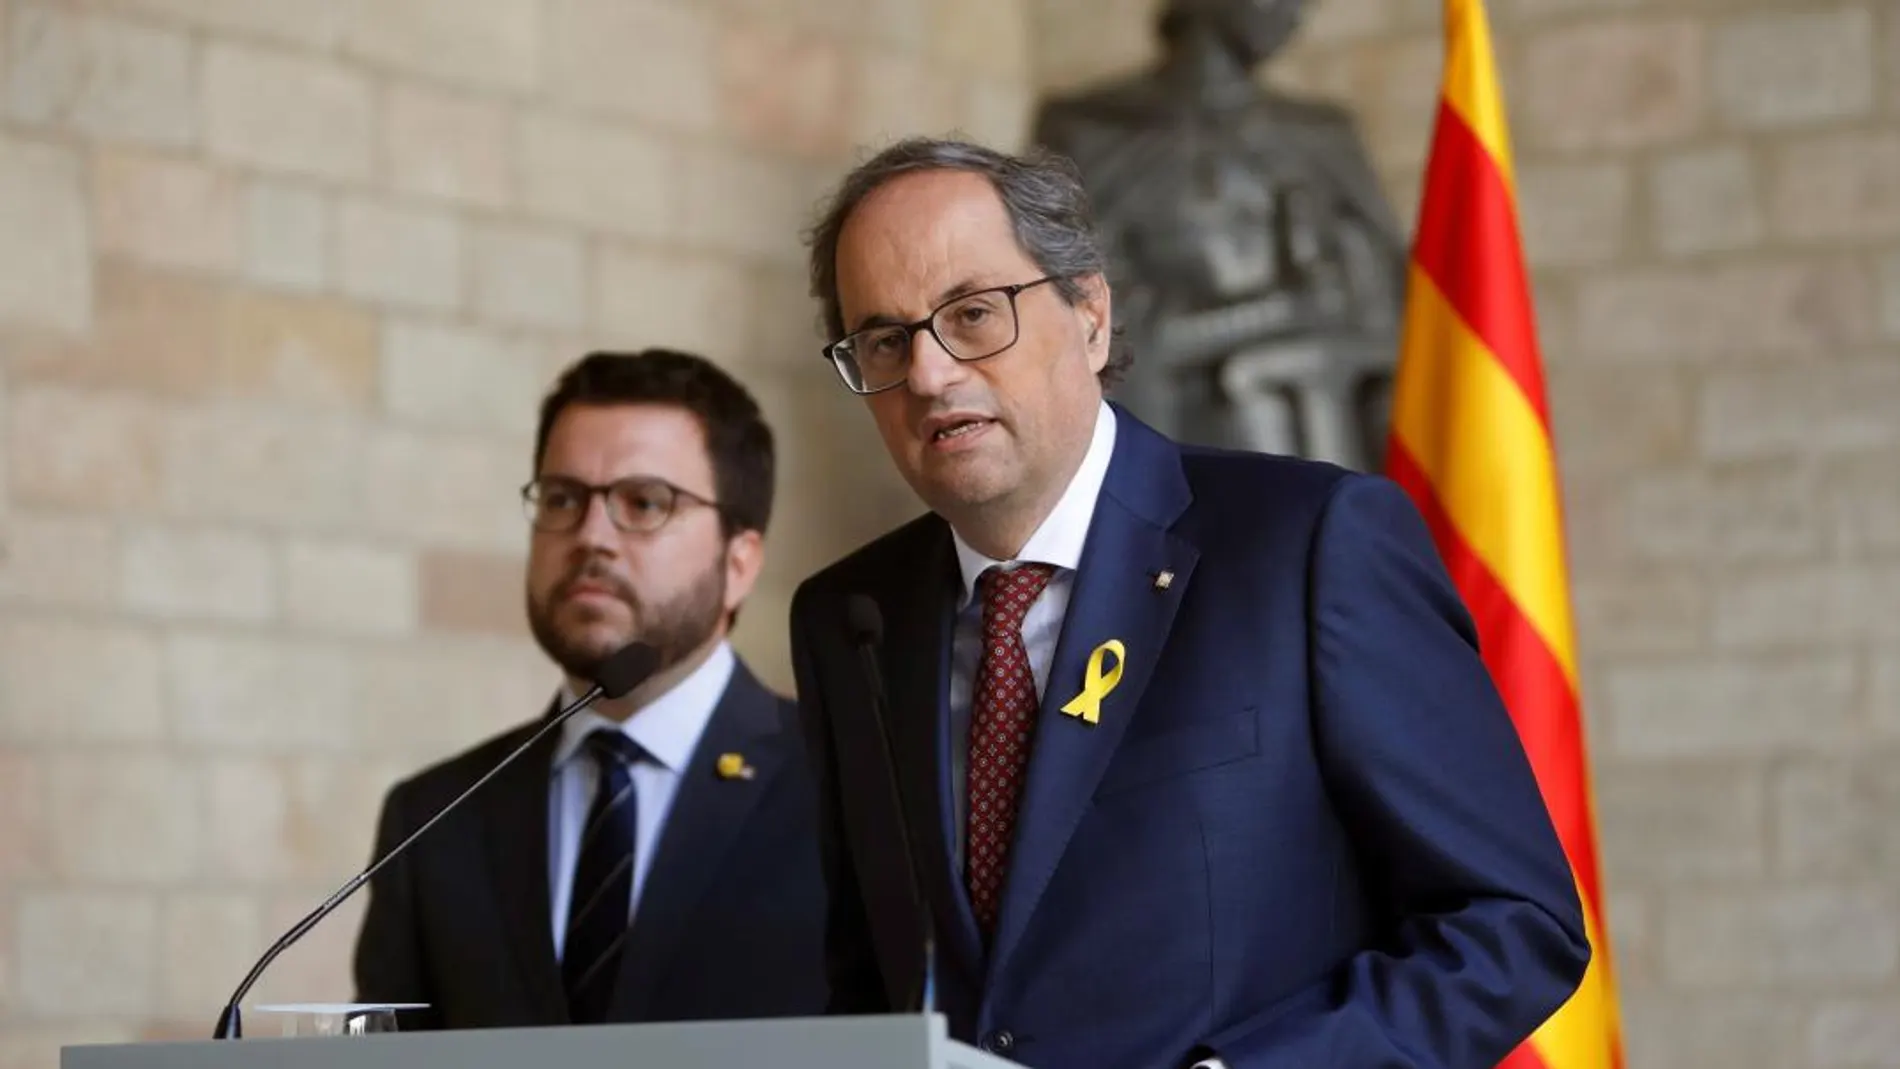 El presidente de la Generalitat, Quim Torra (JxCAT), y su vicepresidente, Pere Aragonès (ERC), durante su comparecencia conjunta.